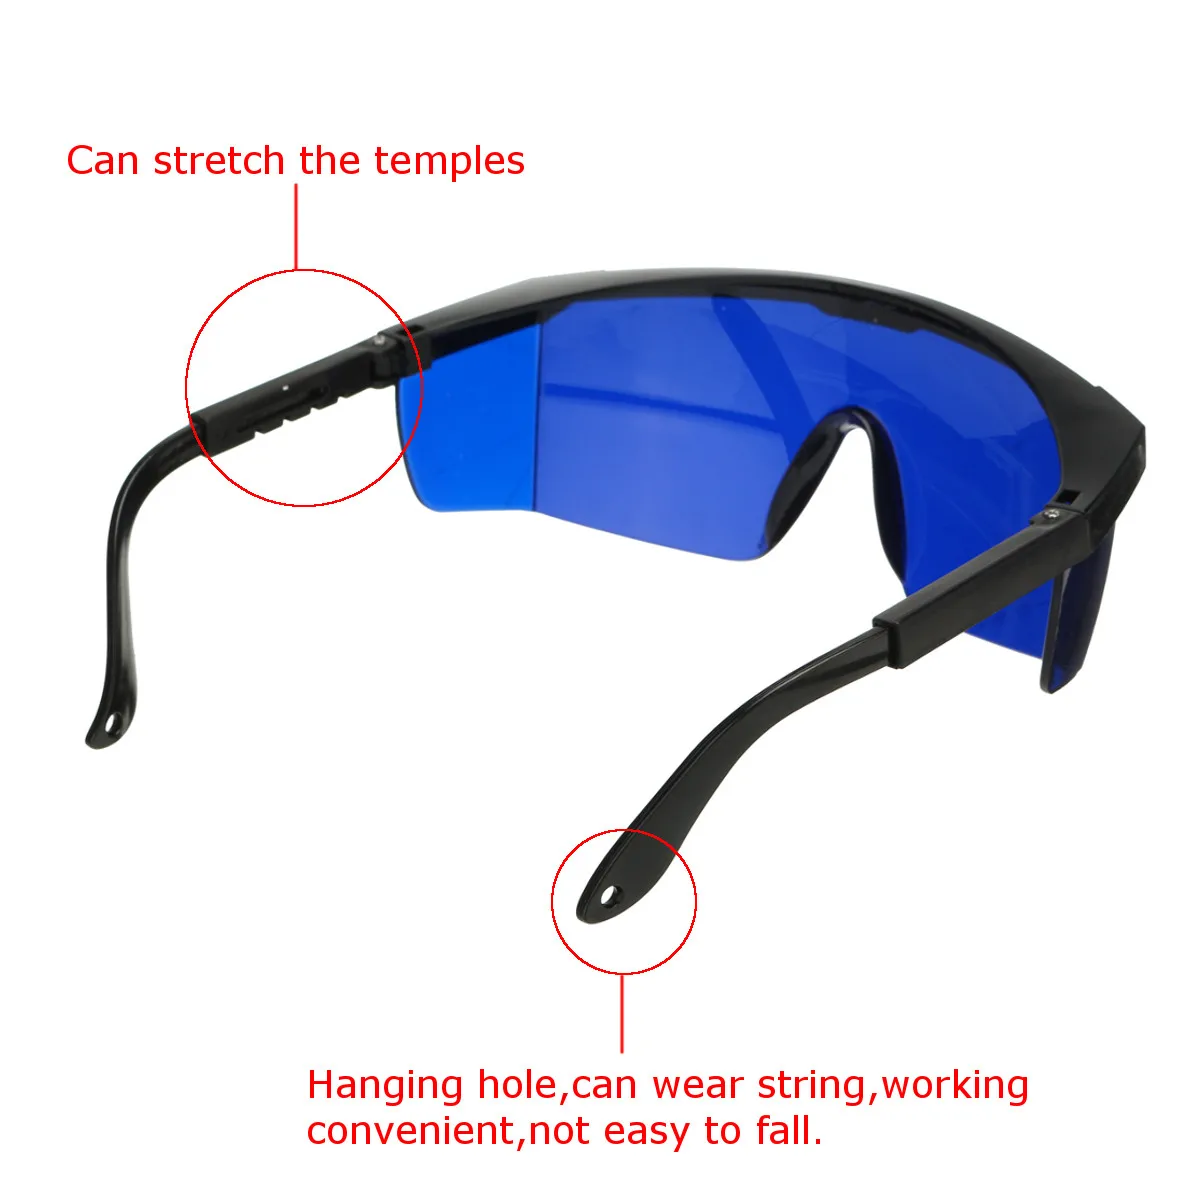 Лазерные защитные очки синий зеленый 190nm-1200nm сварочный лазер IPL инструмент для красоты защитные очки для глаз